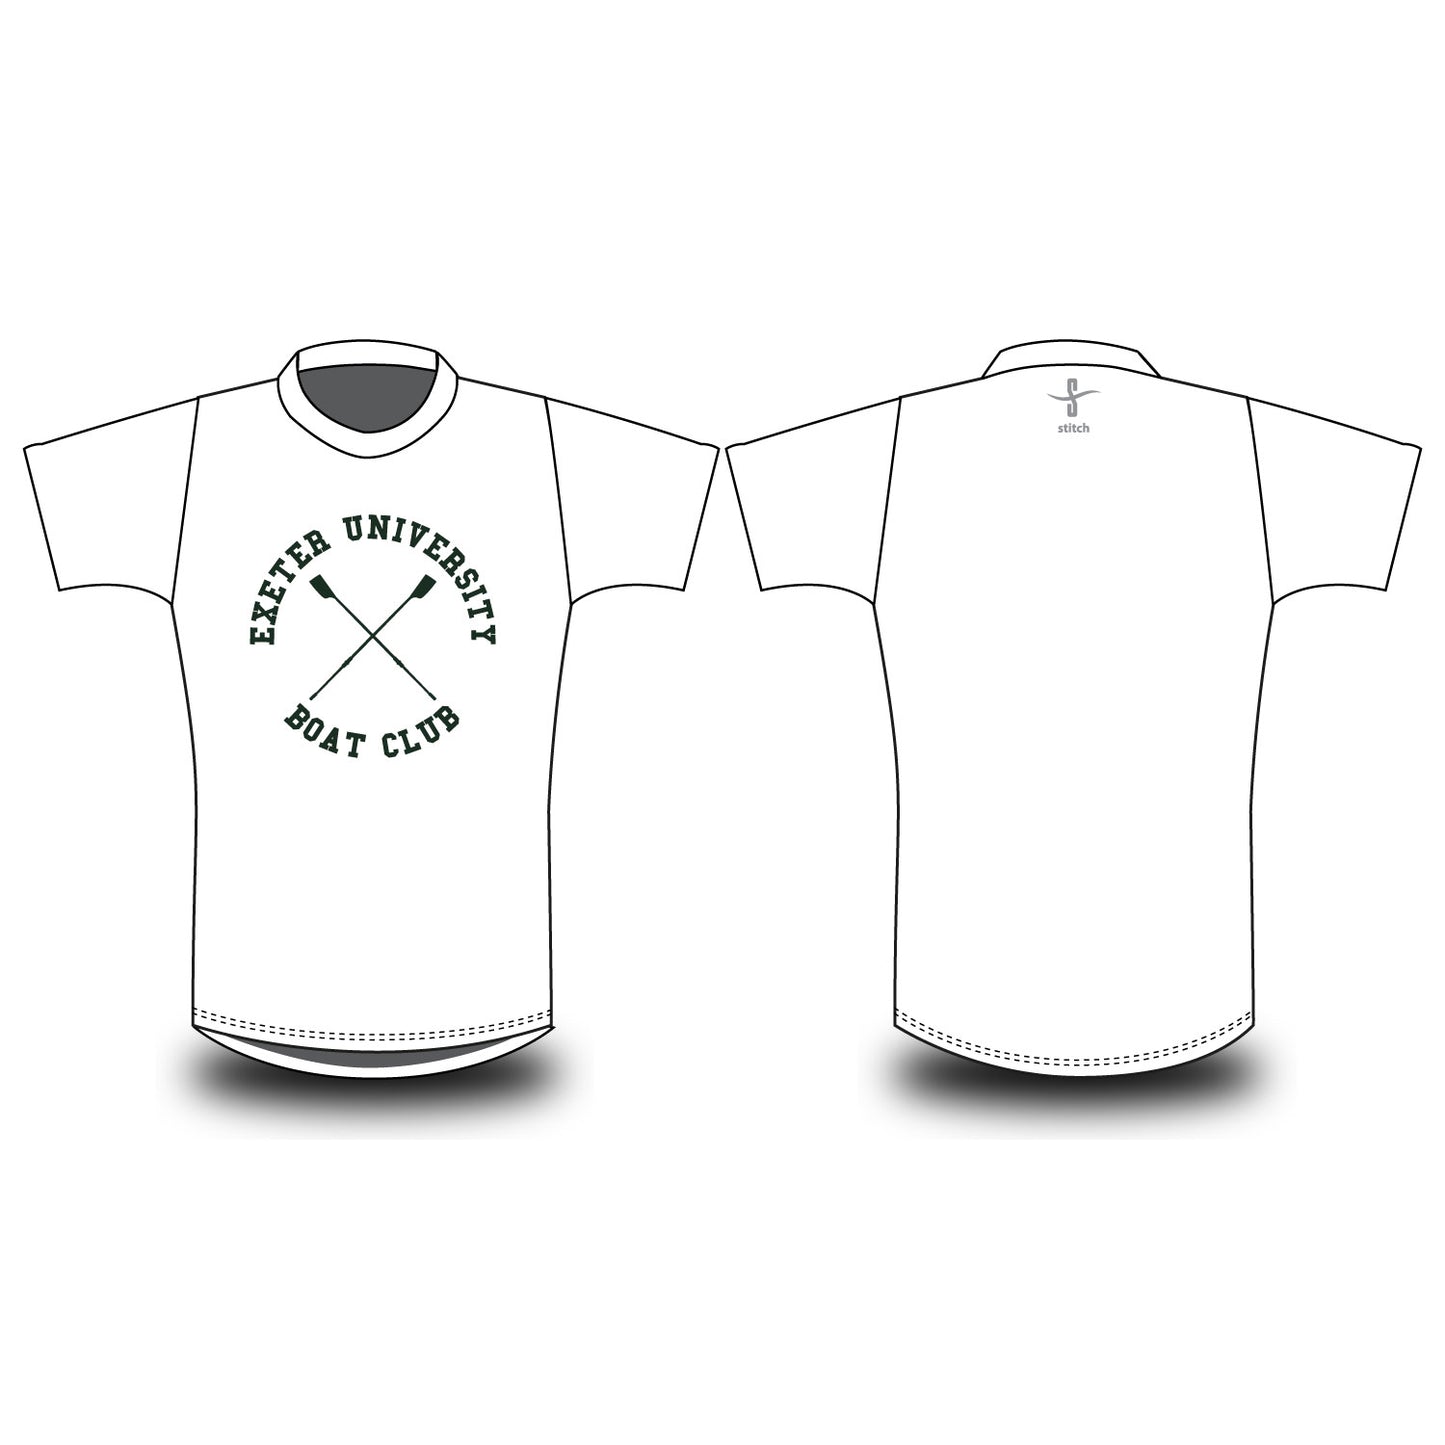 Exeter University Boat Club Roundle T-shirt